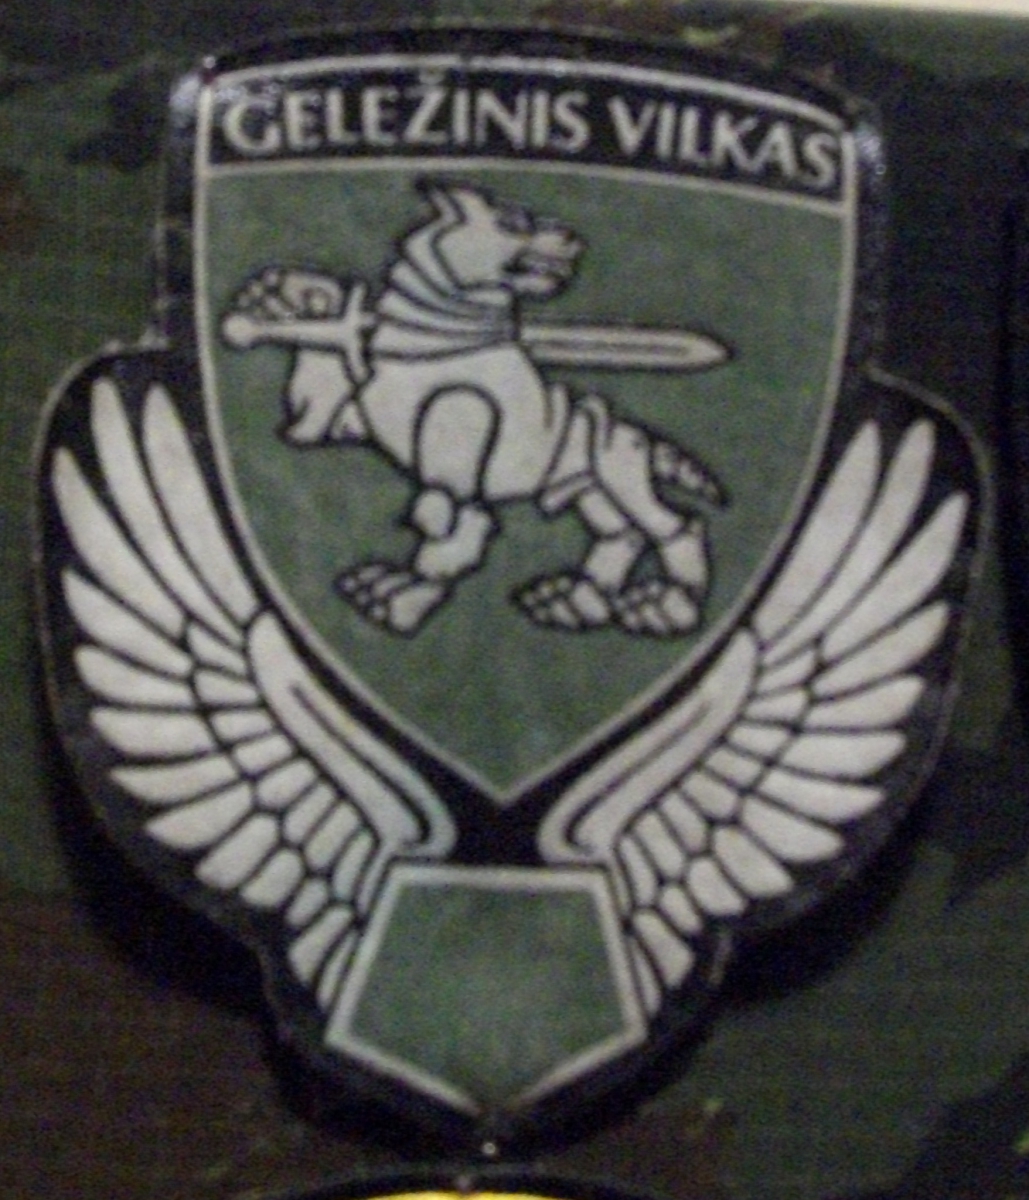 шеврон Моторизированной пехотной бригады « Железный волк »(« Geležinis Vilkas ») Сухопутных войск Литовской Республики.